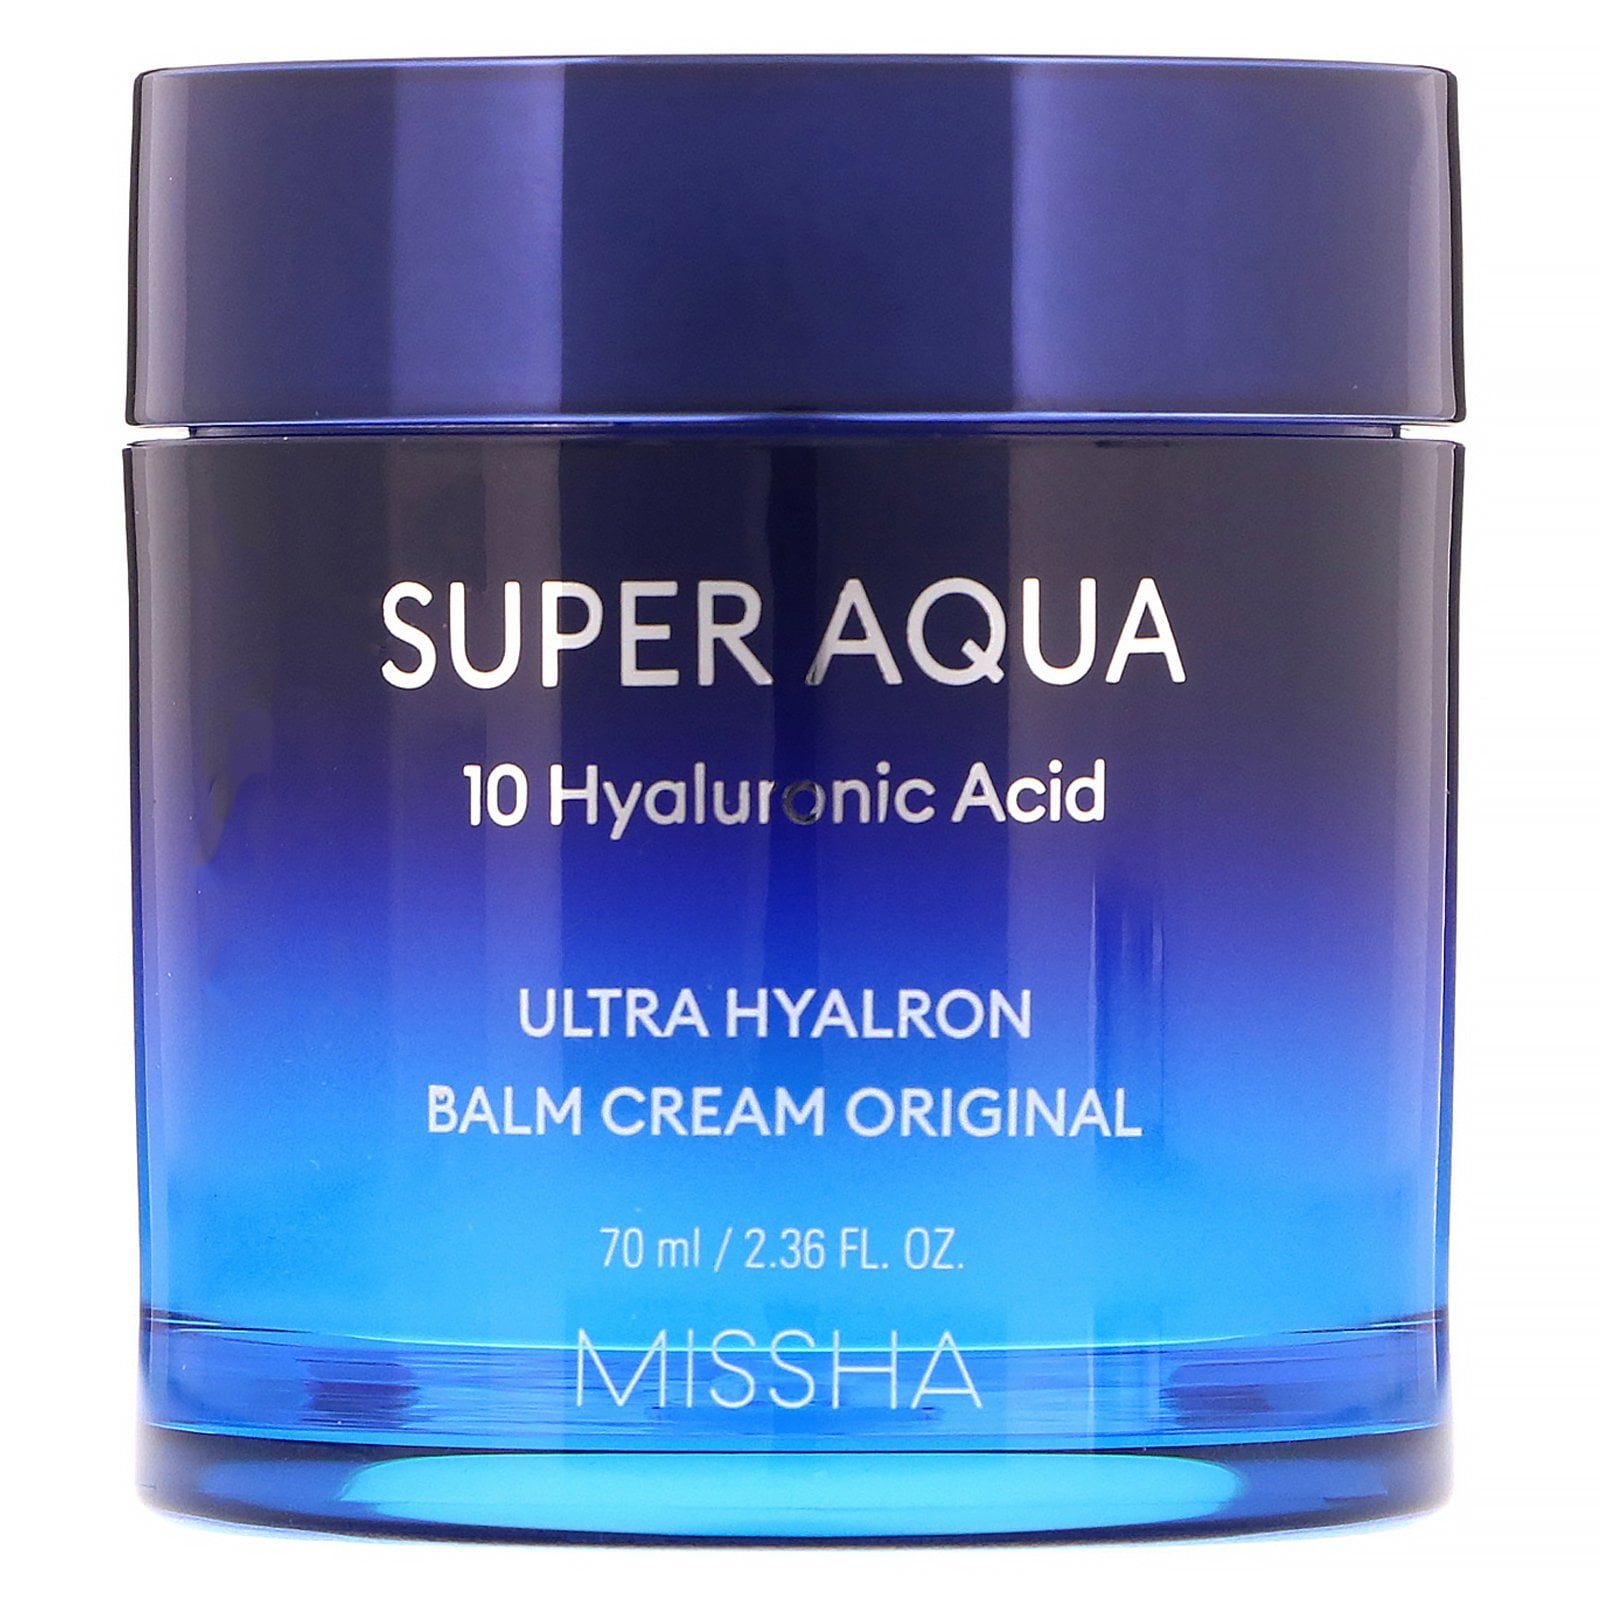 Super Aqua, Ultra Hyalron Balm Cream Original, 2.36 fl oz (70 ml ...